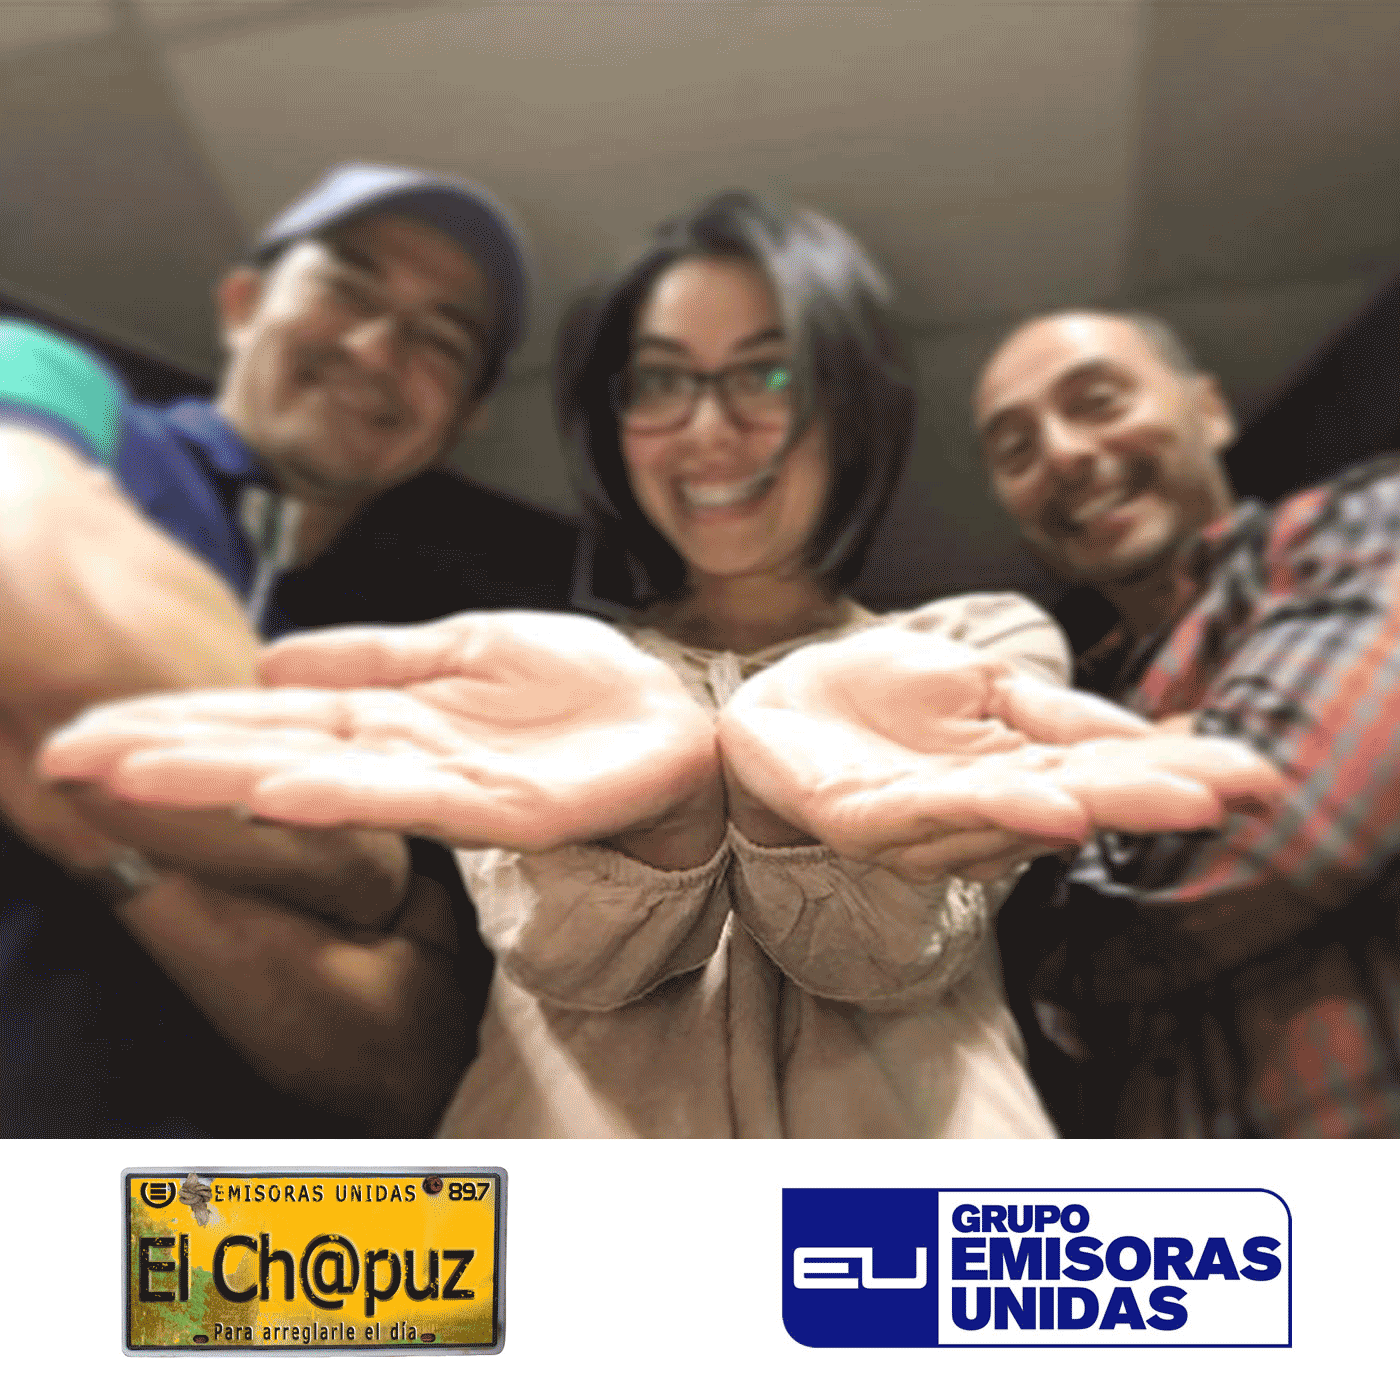 EC36 - El Chapuz - Emisoras unidas - #QueBonitoyMañoso